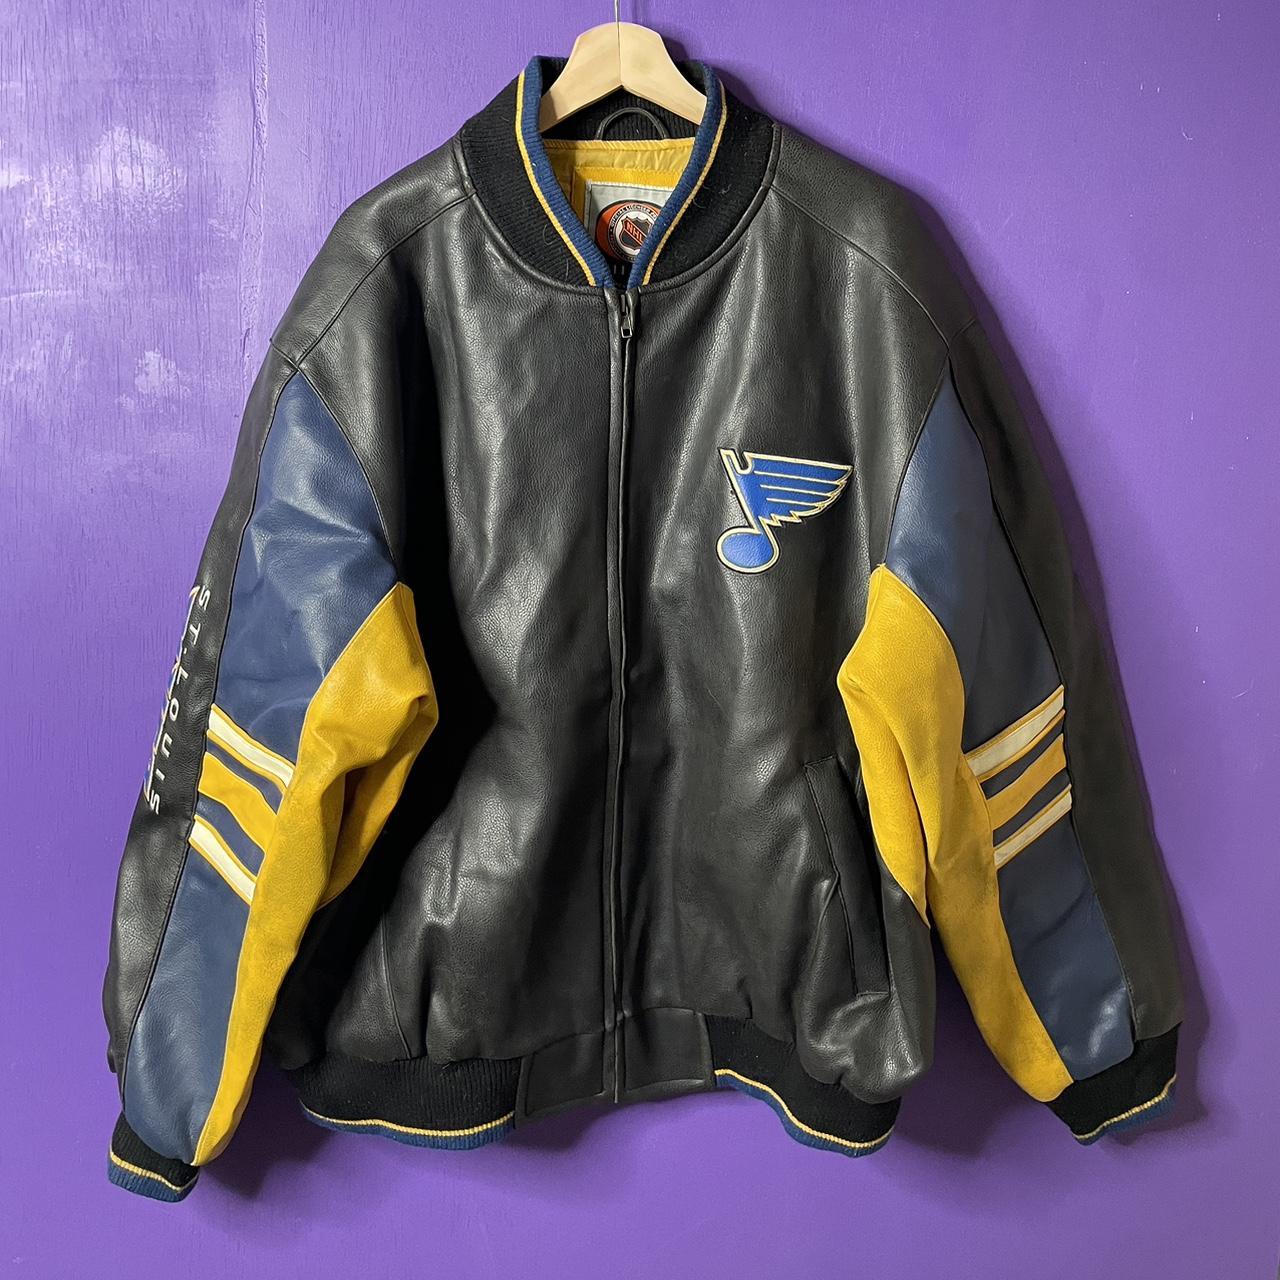 Vintage St Louis Blues XL NHL Varsity Jacket New Men